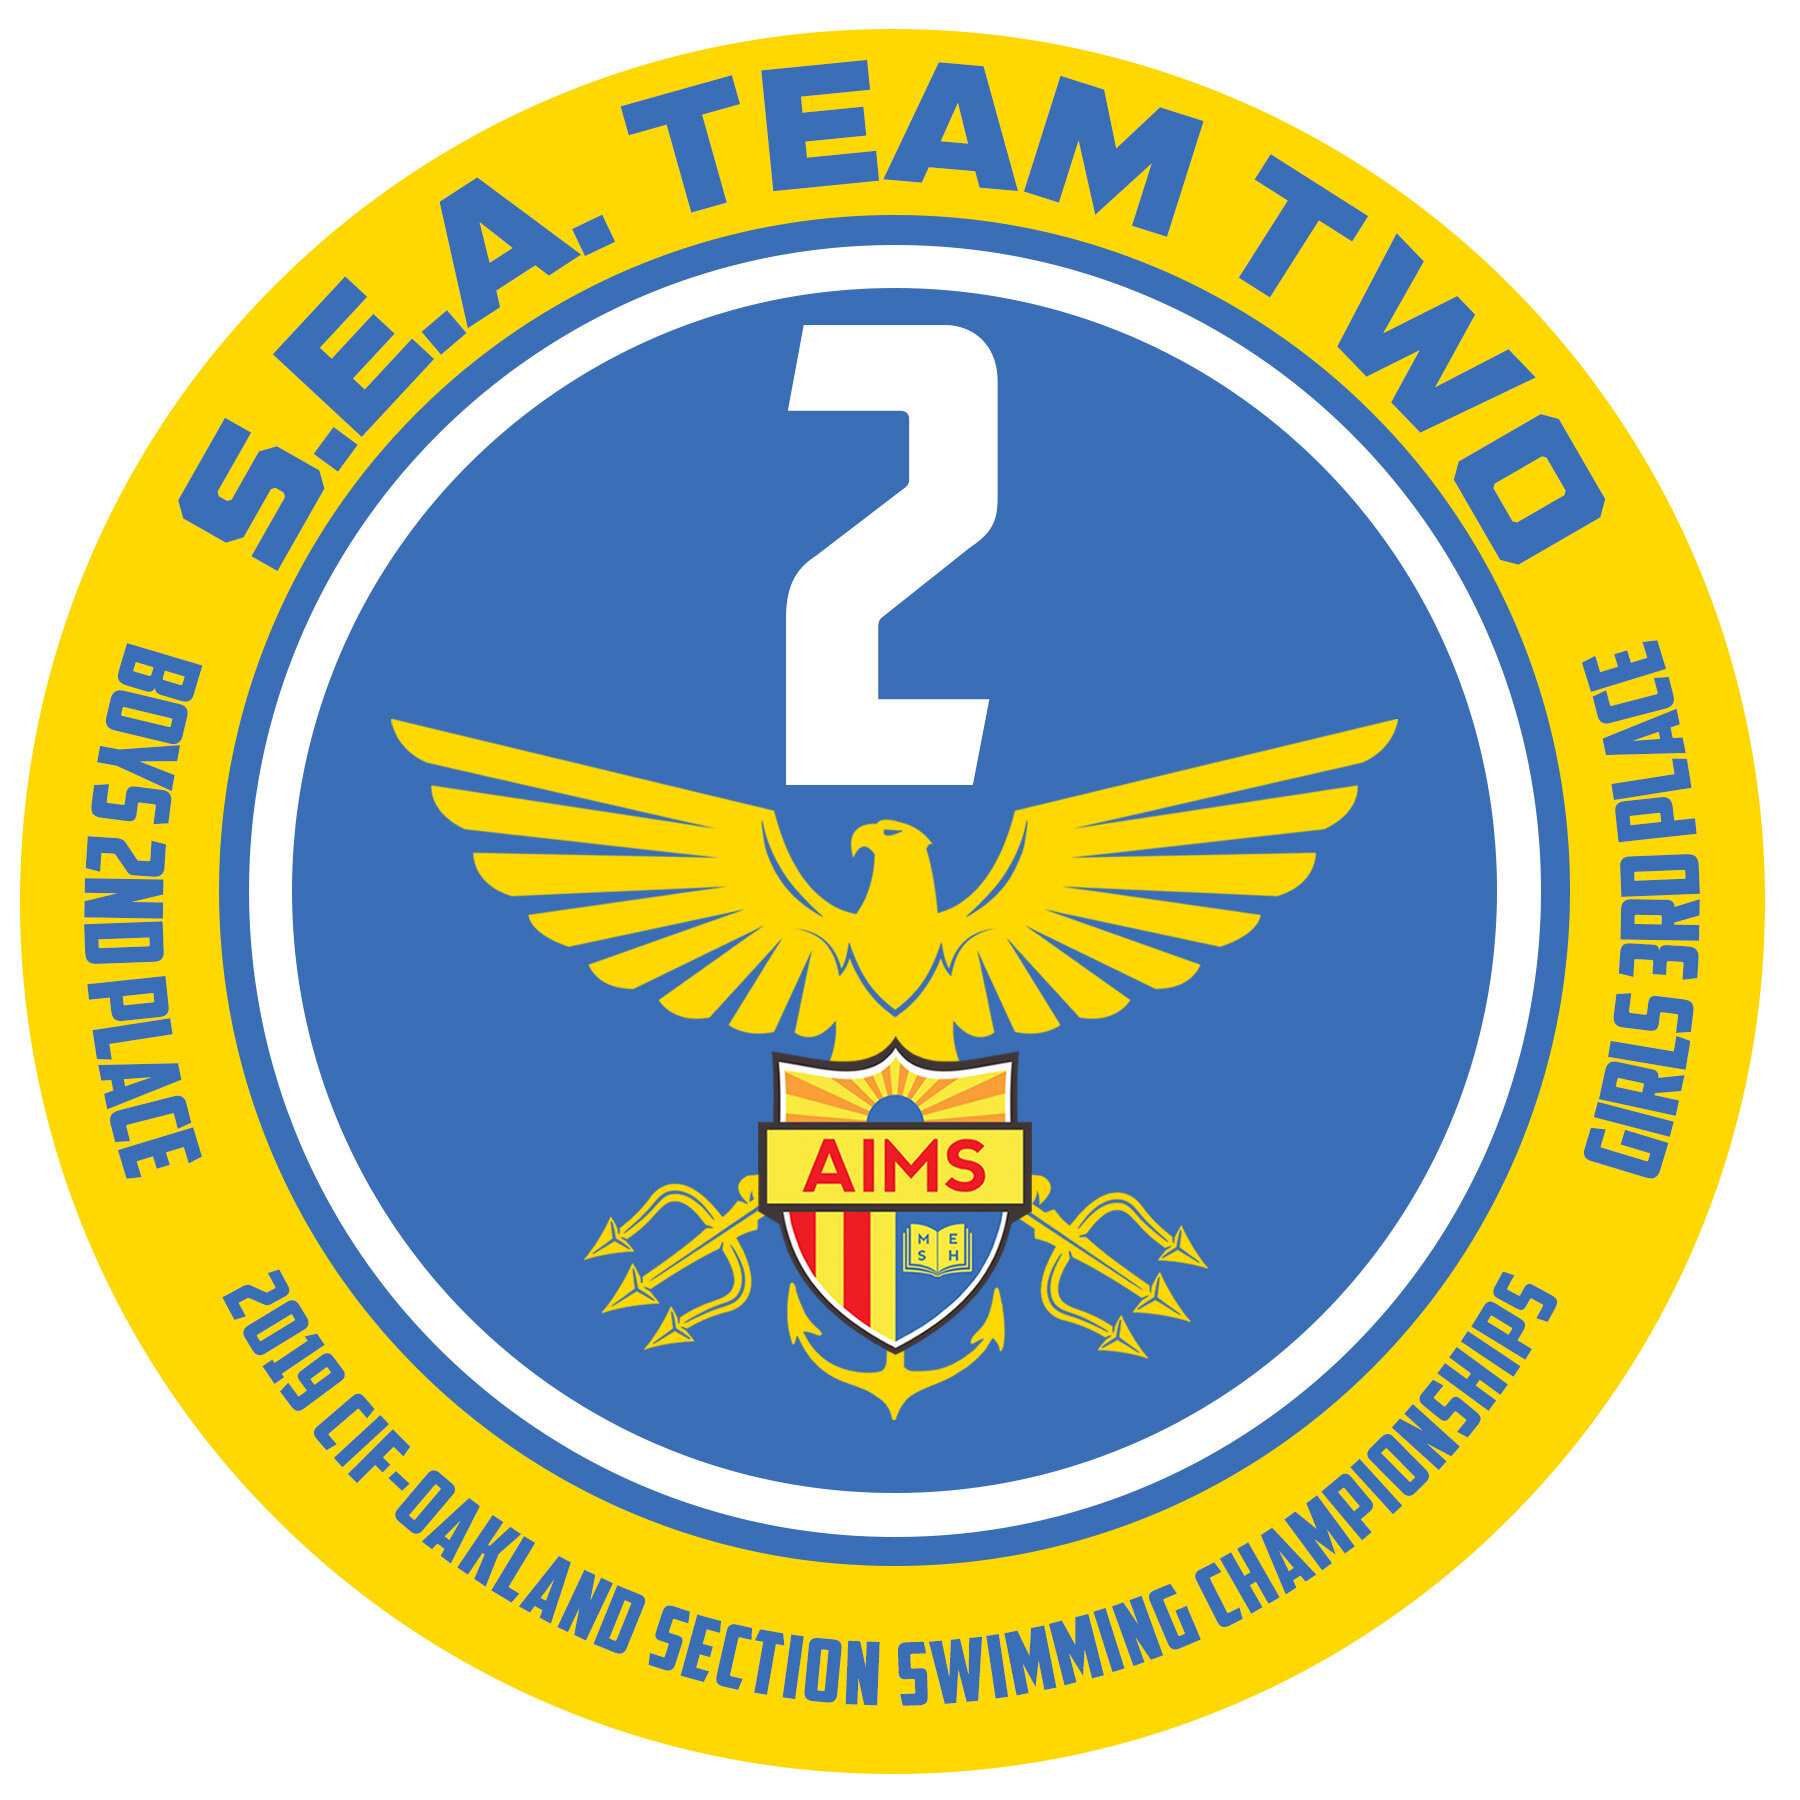 SEA Team 2.jpg